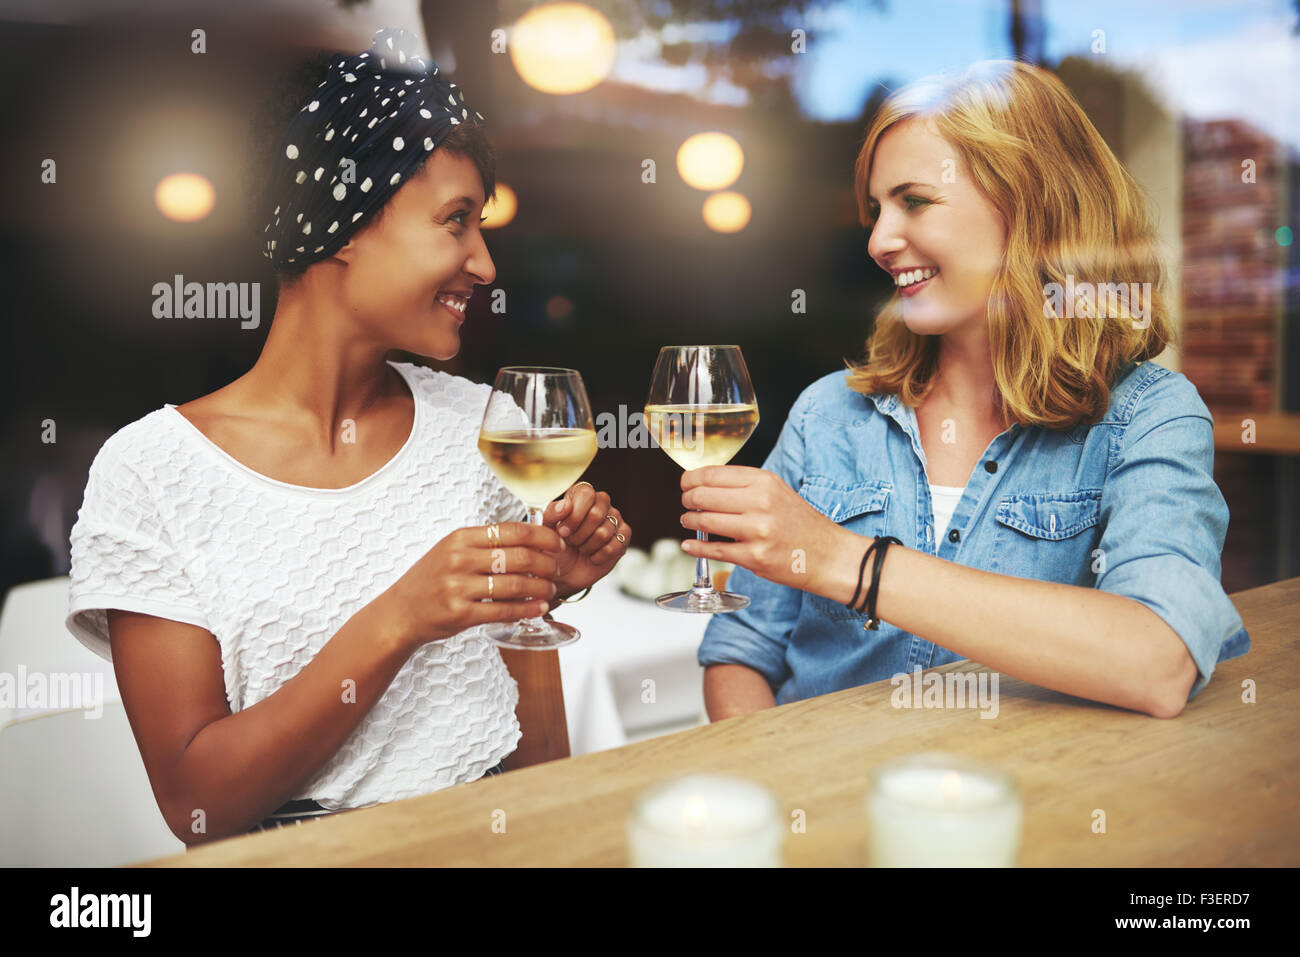 Hübsche junge Frauen Toasten einander mit Gläser Weißwein, wie sie sich in ein Pub für einen entspannten Plausch treffen Stockfoto